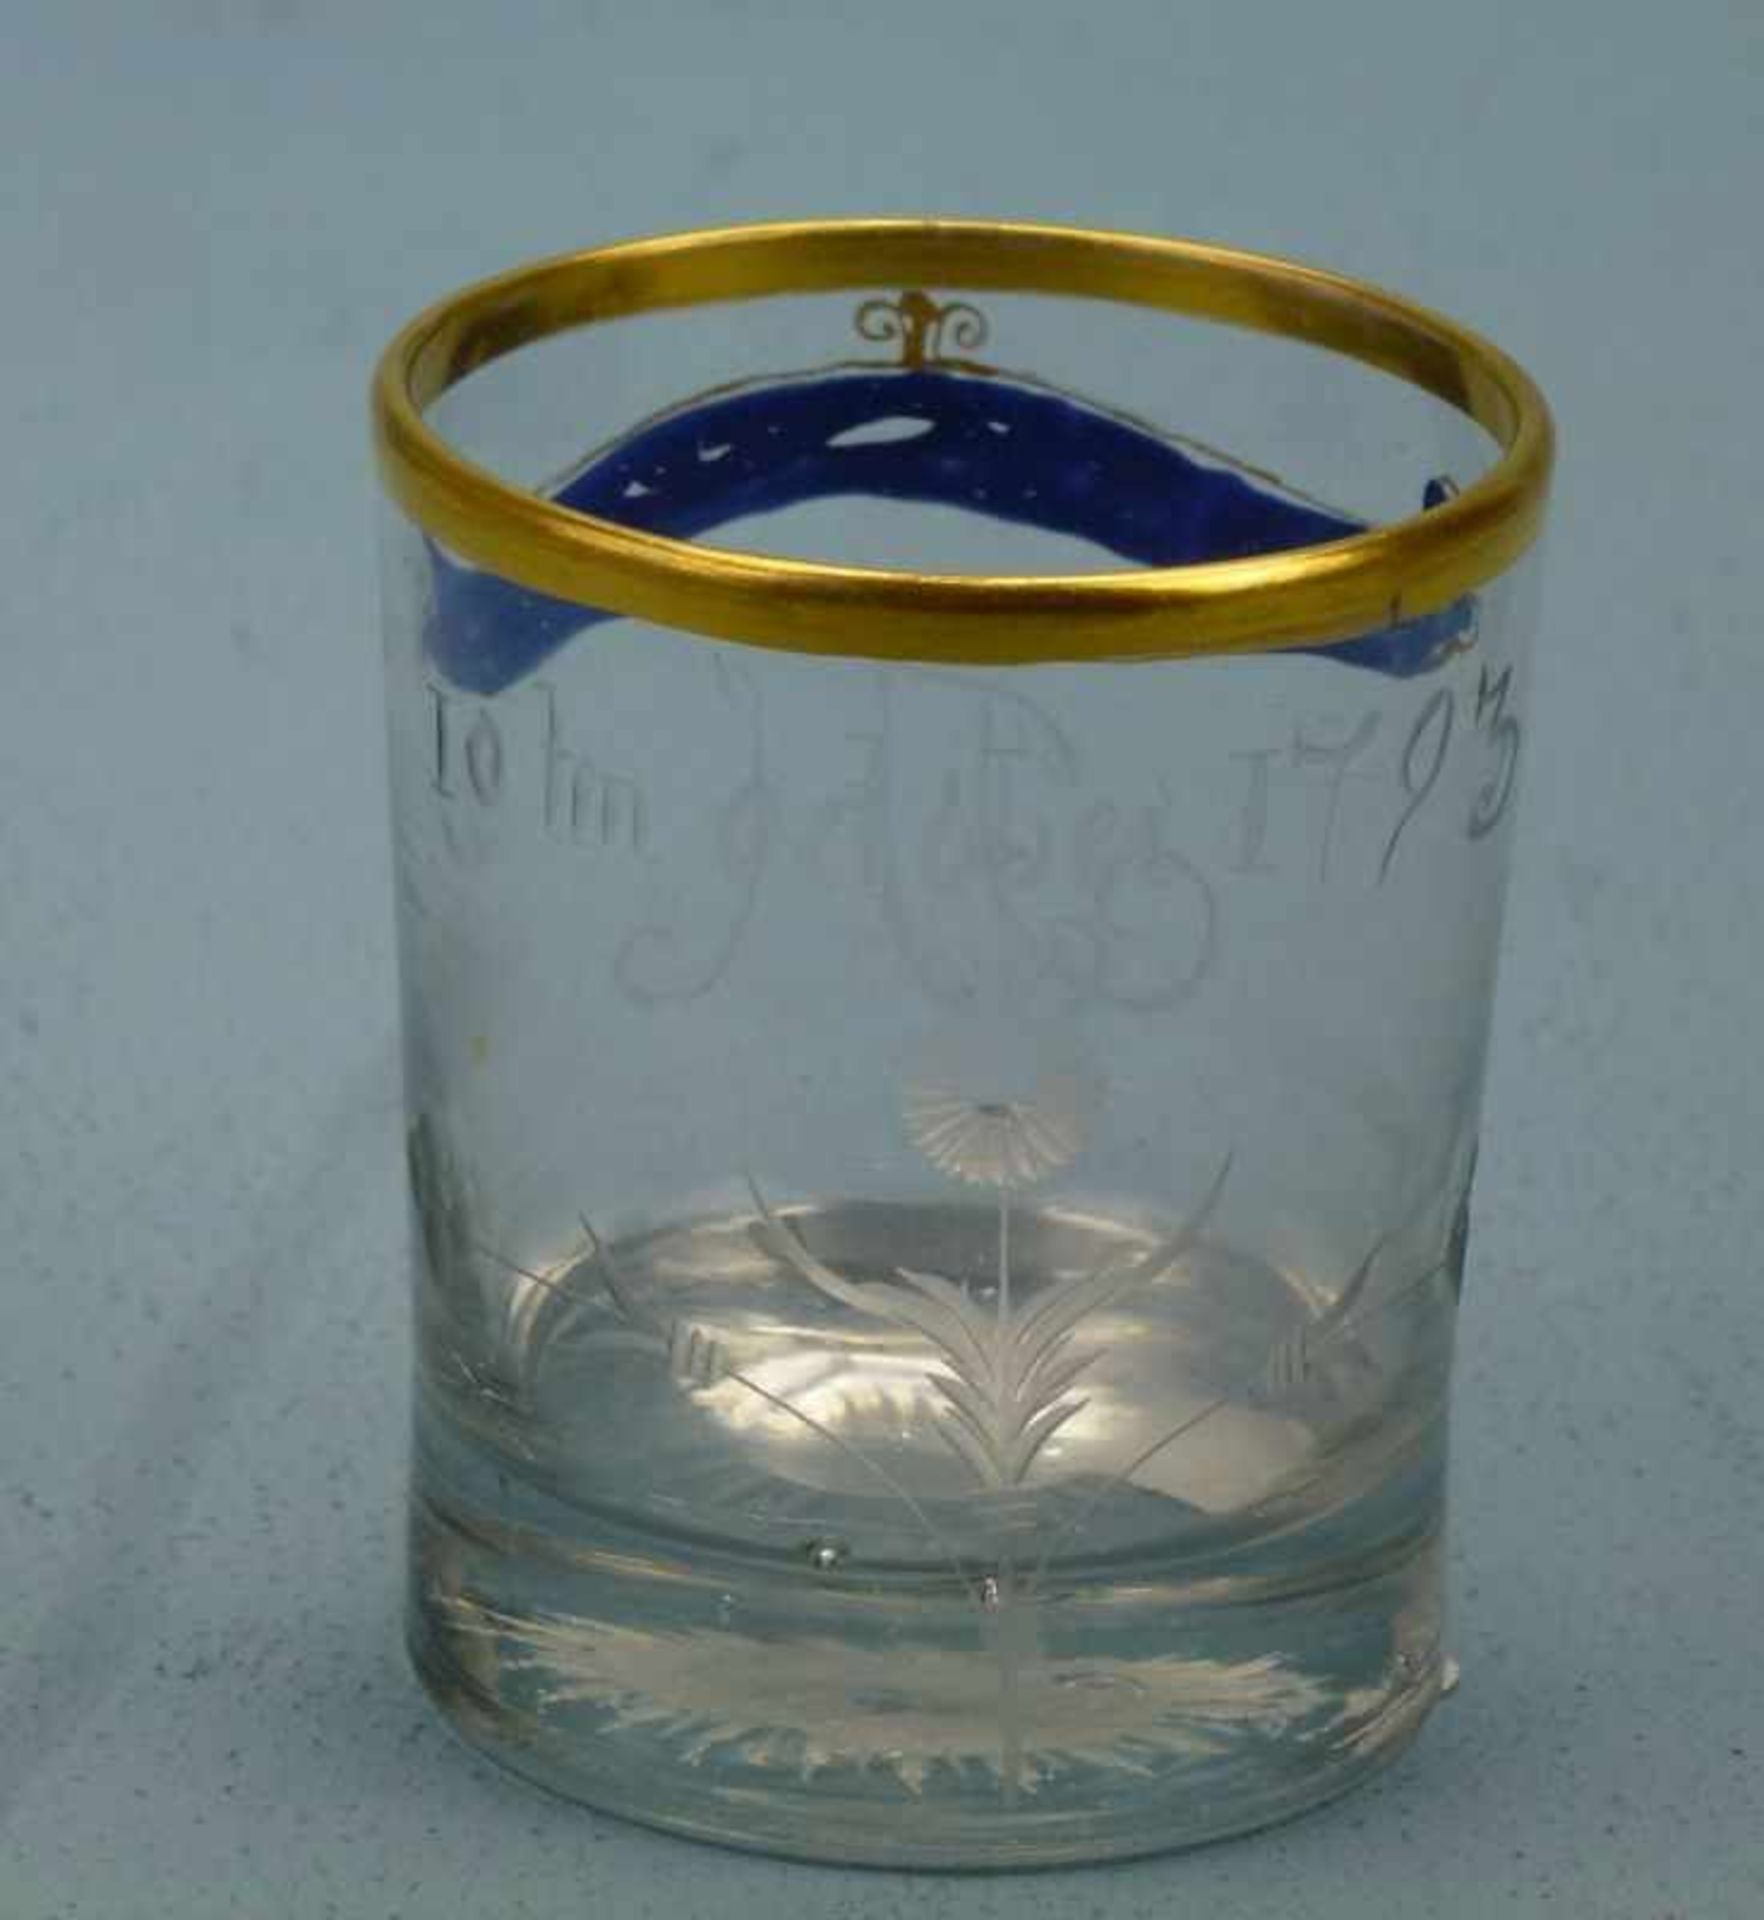 Becherglas, 1793 zylindrisch, Schliffdekor: Blume, Initiale: FH; Spruchband: "Was wirwünschen", - Bild 2 aus 2